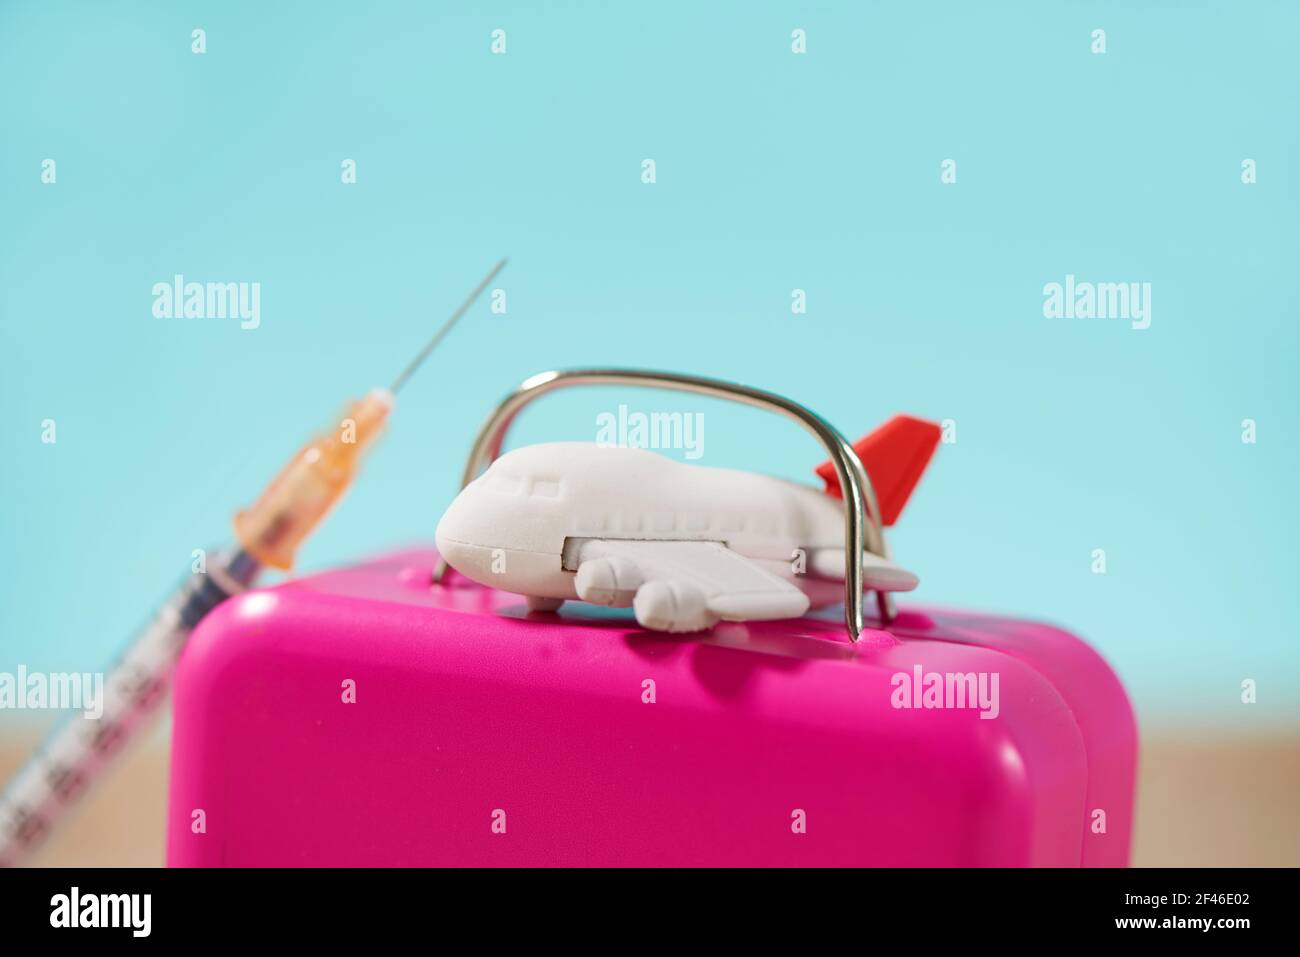 gros plan d'un avion sur une valise rose, et d'une seringue sur le sable, sur un fond bleu, représentant l'entreprise de tourisme médical Banque D'Images